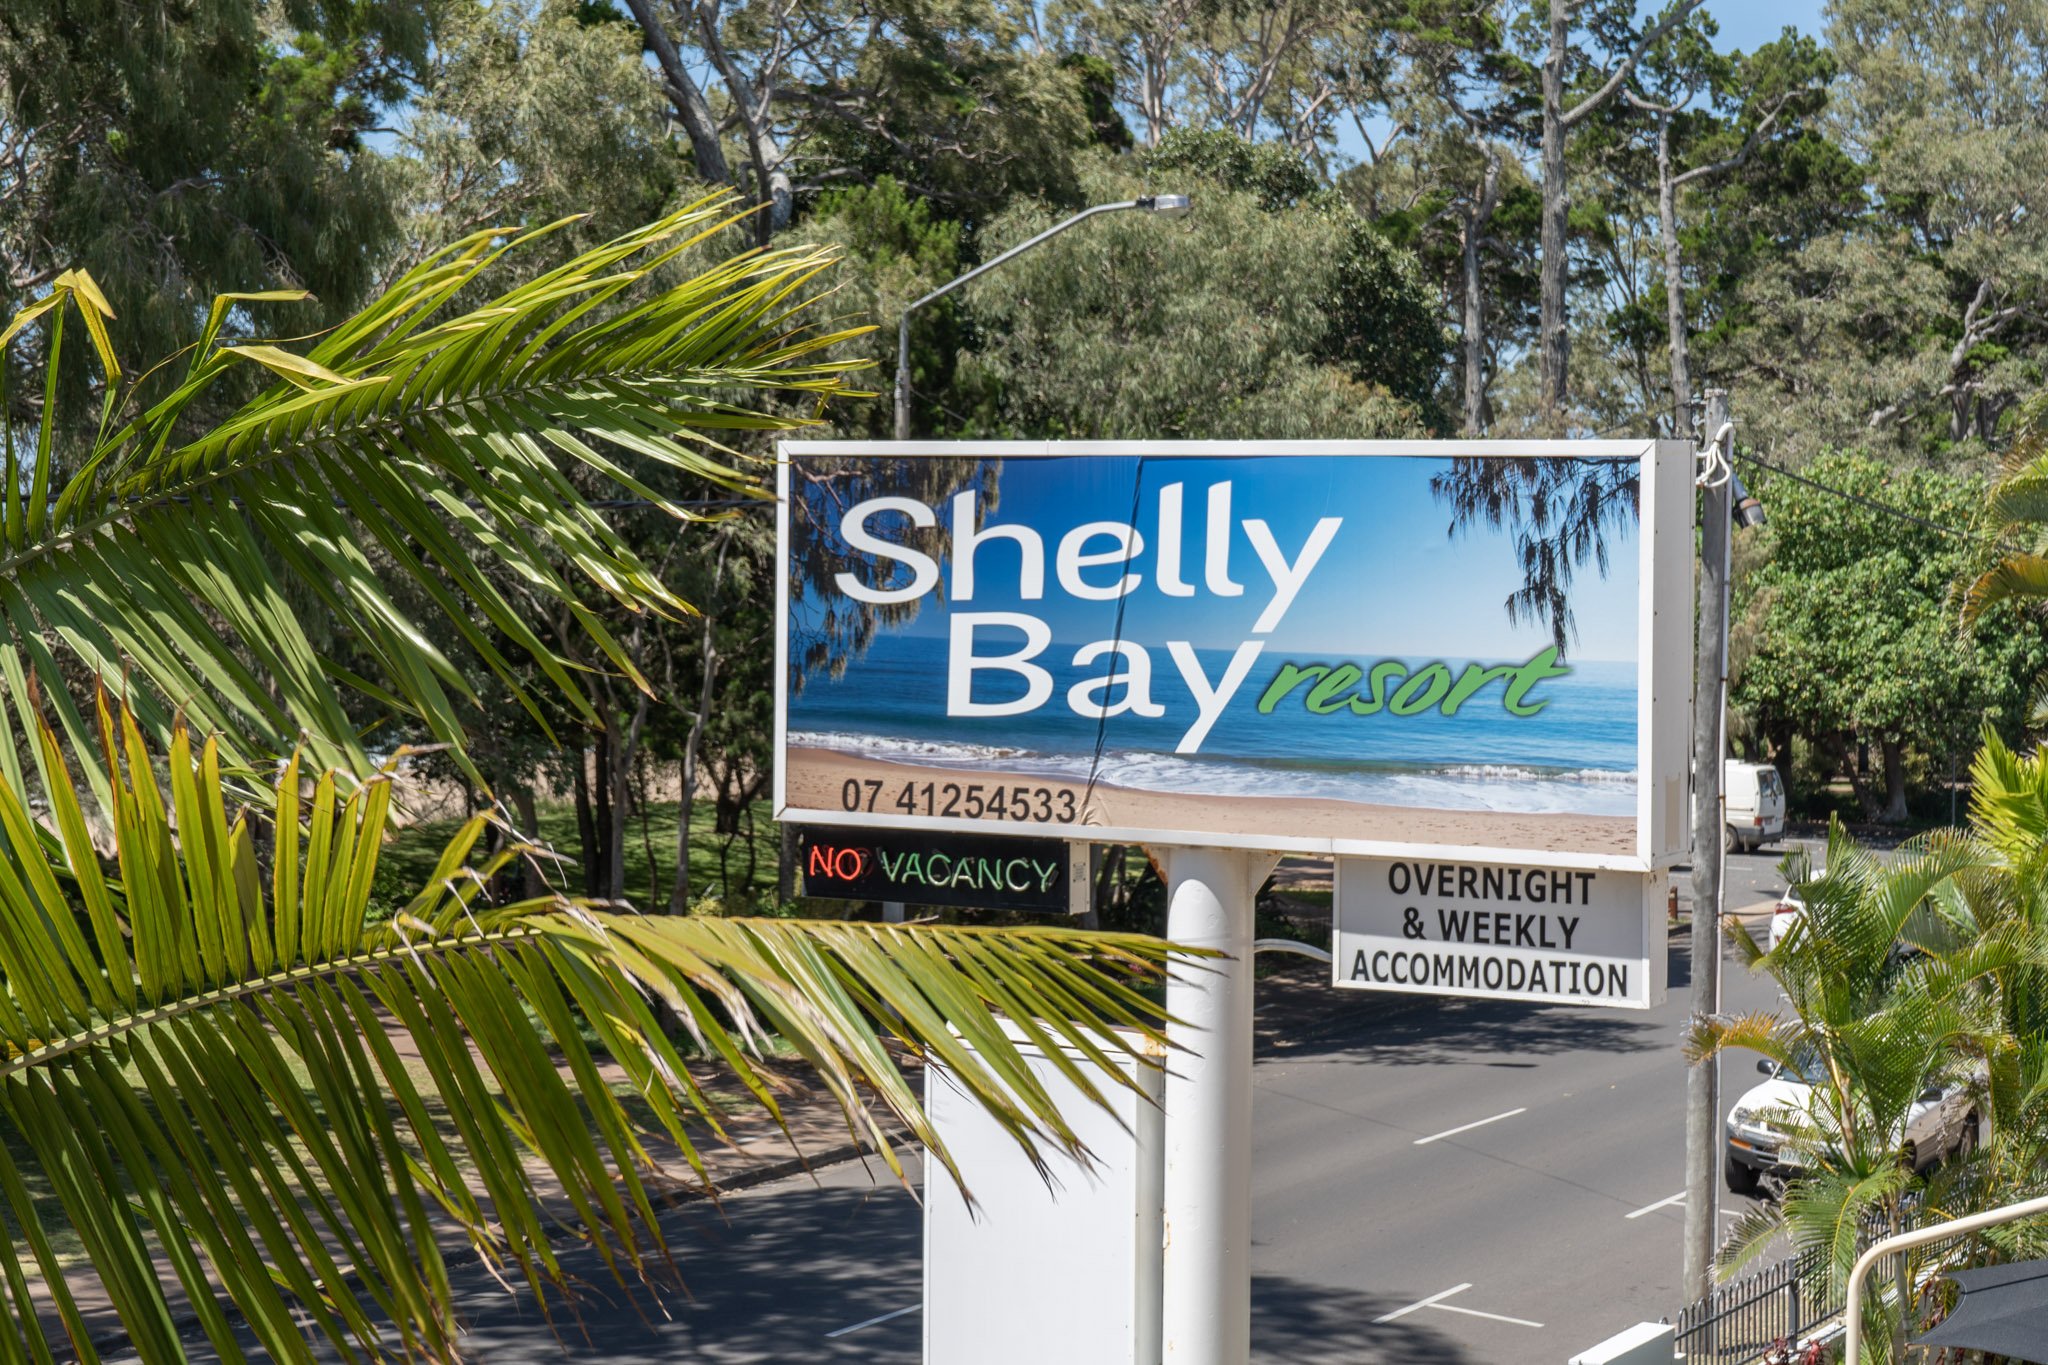 shelly-bay-resort-hervey-bay